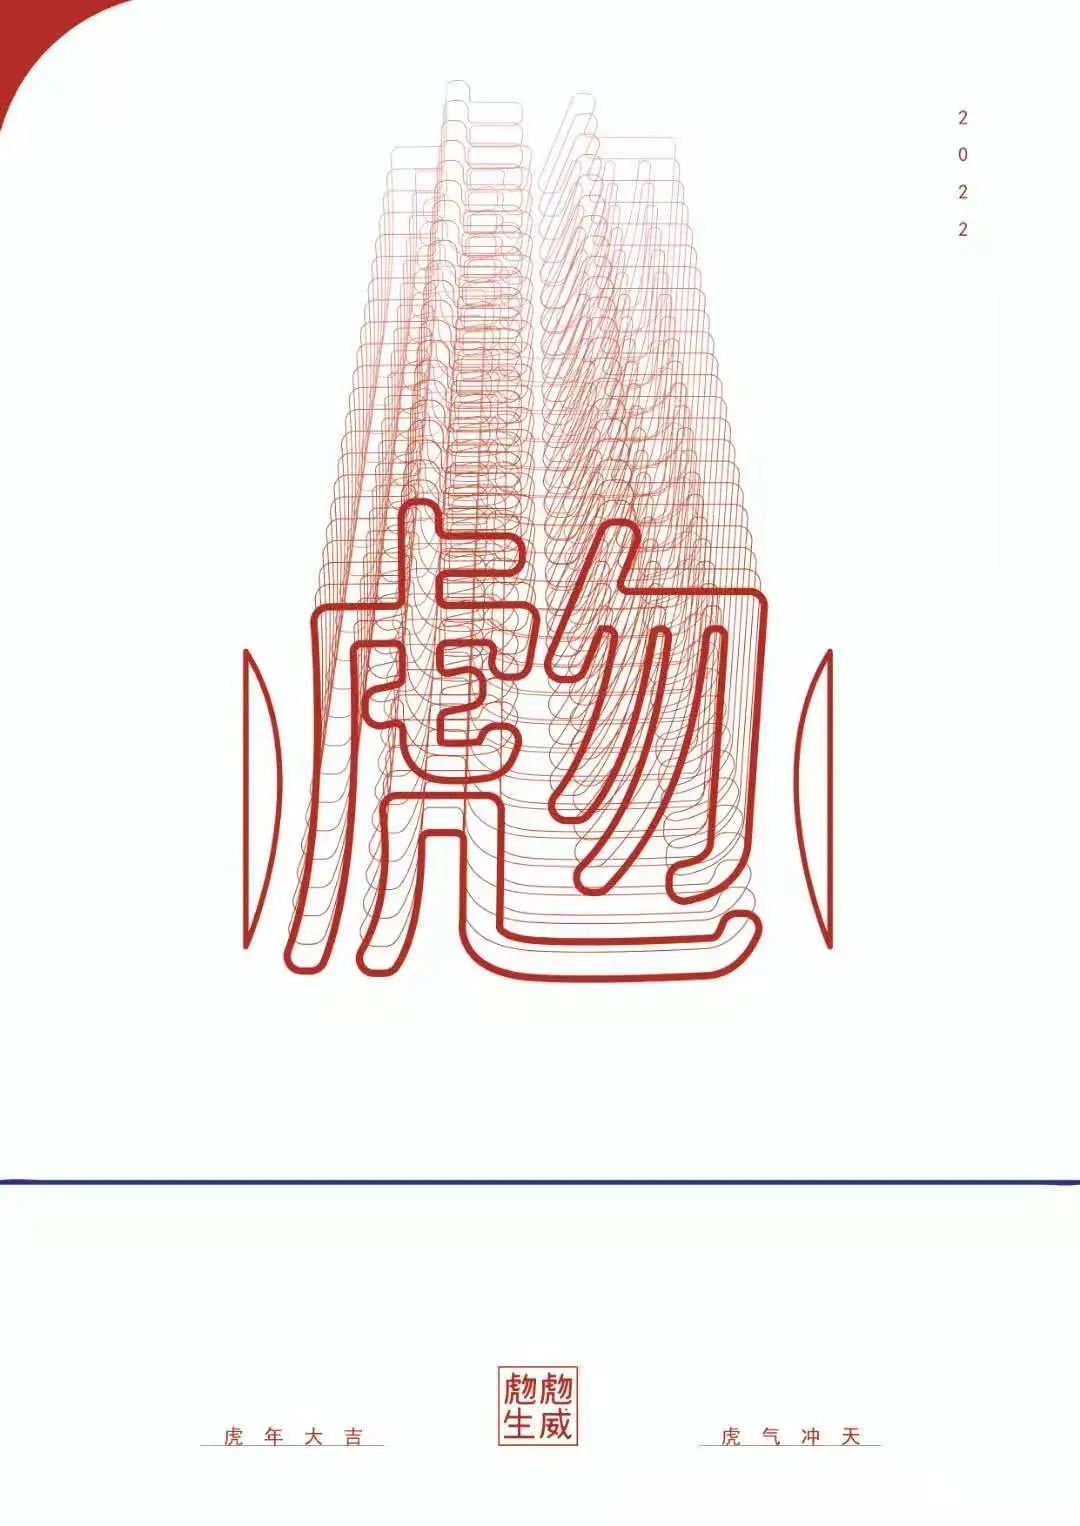 山东艺术设计职业学院两件“虎”主题作品荣获2022年中国高校生肖设计大赛大奖